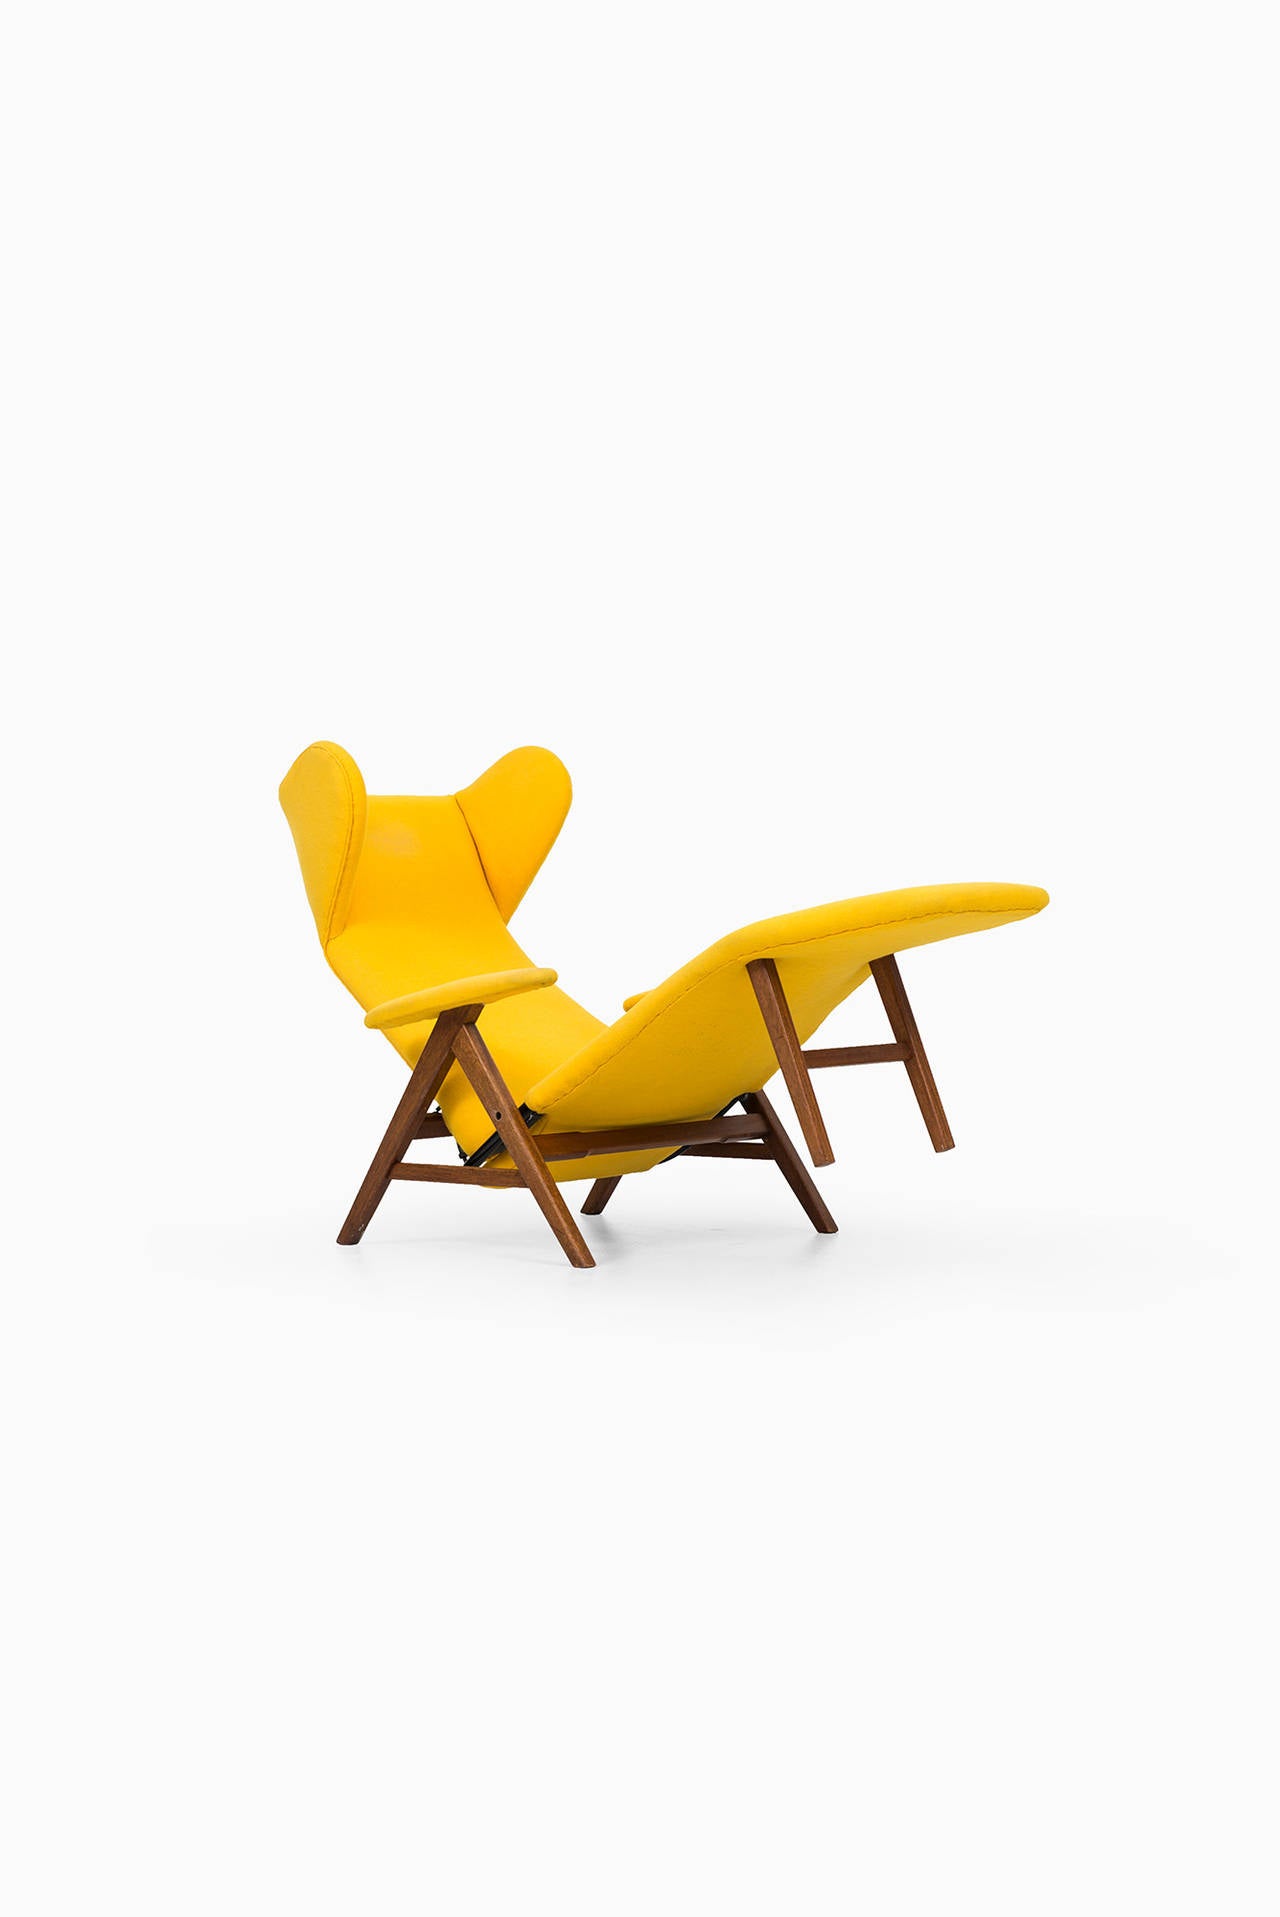 Teak H.W Klein reclining chair by Bramin møbler in Denmark